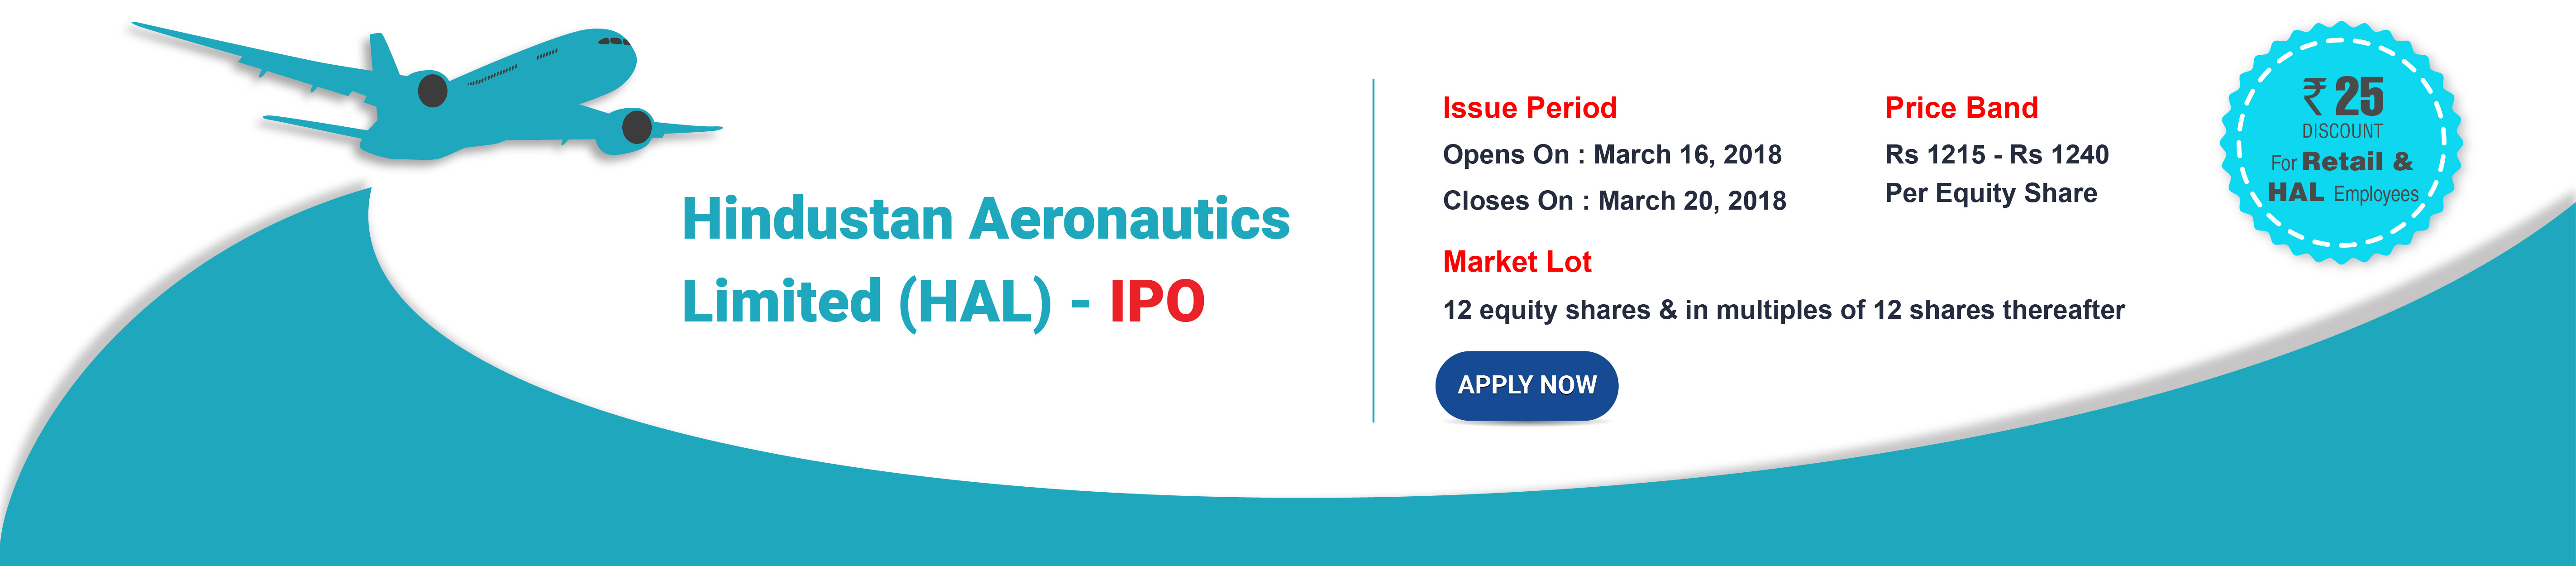 Hindustan Aeronautics Ltd IPO - Banner